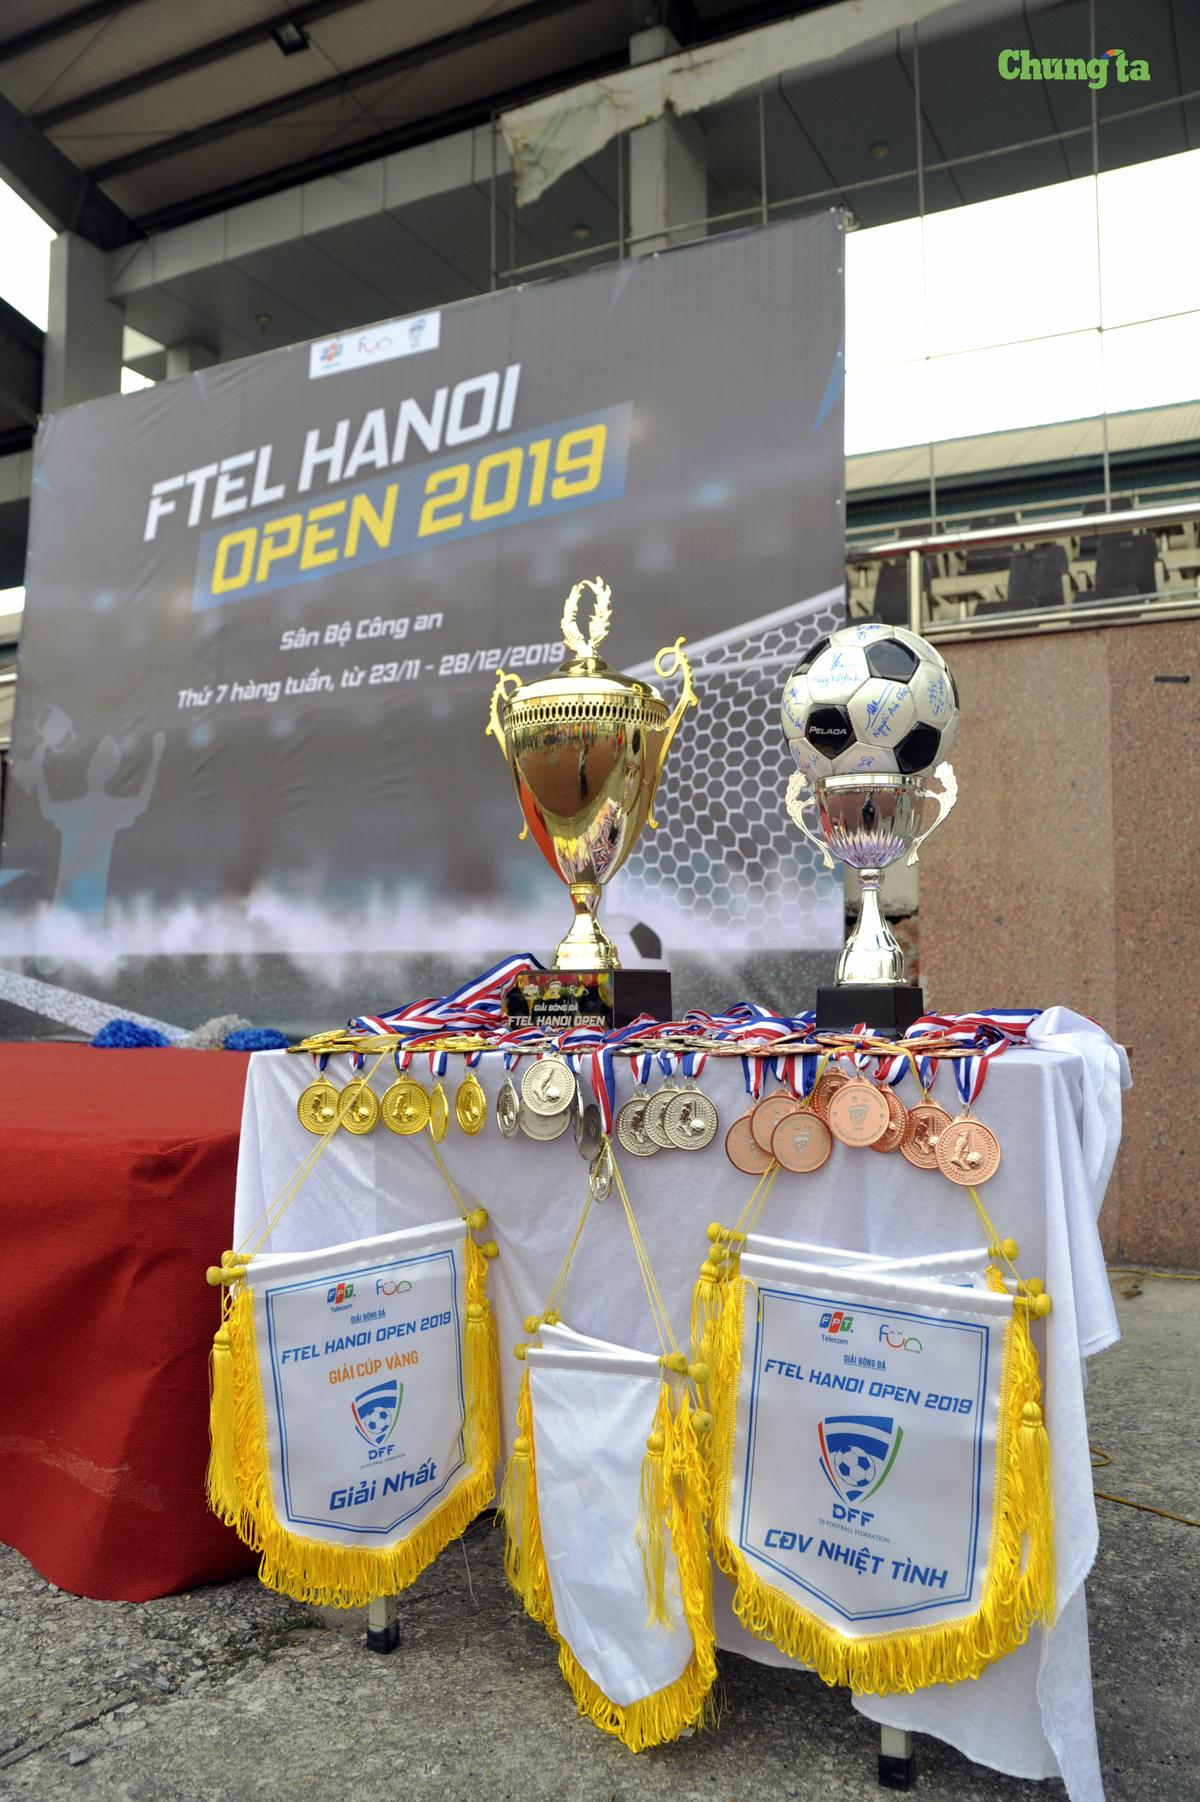 <p style="text-align:justify;"> BTC đã chuẩn bị sẵn Cup, huy chương và cờ lưu niệm trưng bày trong ngày khai mạc. Trong đó, điểm nhấn là trái bóng có chữ ký của TGĐ FPT Telecom kiêm Chủ tịch Liên đoàn bóng đá FPT Telecom (DFF) Hoàng Việt Anh cùng nhiều lãnh đạo của nhà 'Cáo'.</p> <p style="text-align:justify;"> Về thể thức thi đấu, giải bóng đá FTEL Hanoi Open 2019 áp dụng hình thức đấu sân 7 người, không áp dụng luật việt vị. Tại vòng bảng, mỗi bảng có 4 đội đá vòng tròn. BTC giải chọn ra 2 đội Nhất, Nhì mỗi bảng vào đá tứ kết. 4 đội thắng ở vòng tứ kết tiếp tục tranh tài ở bán kết Cup Vàng; 4 đội thua đá Cup Bạc.</p>